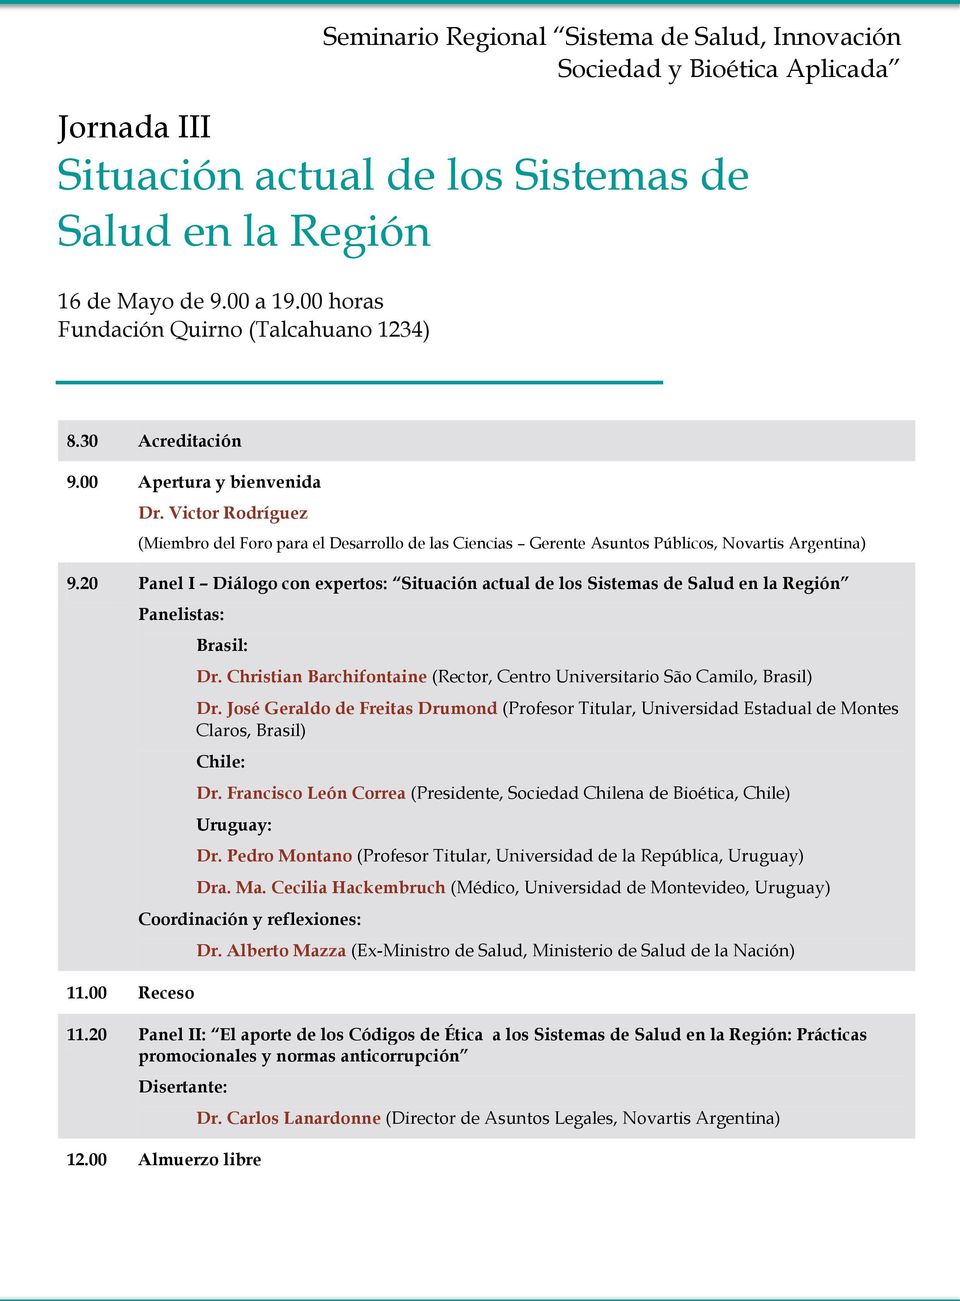 20 Panel I Diálogo con expertos: Situación actual de los Sistemas de Salud en la Región Panelistas: 11.00 Receso Brasil: Dr.